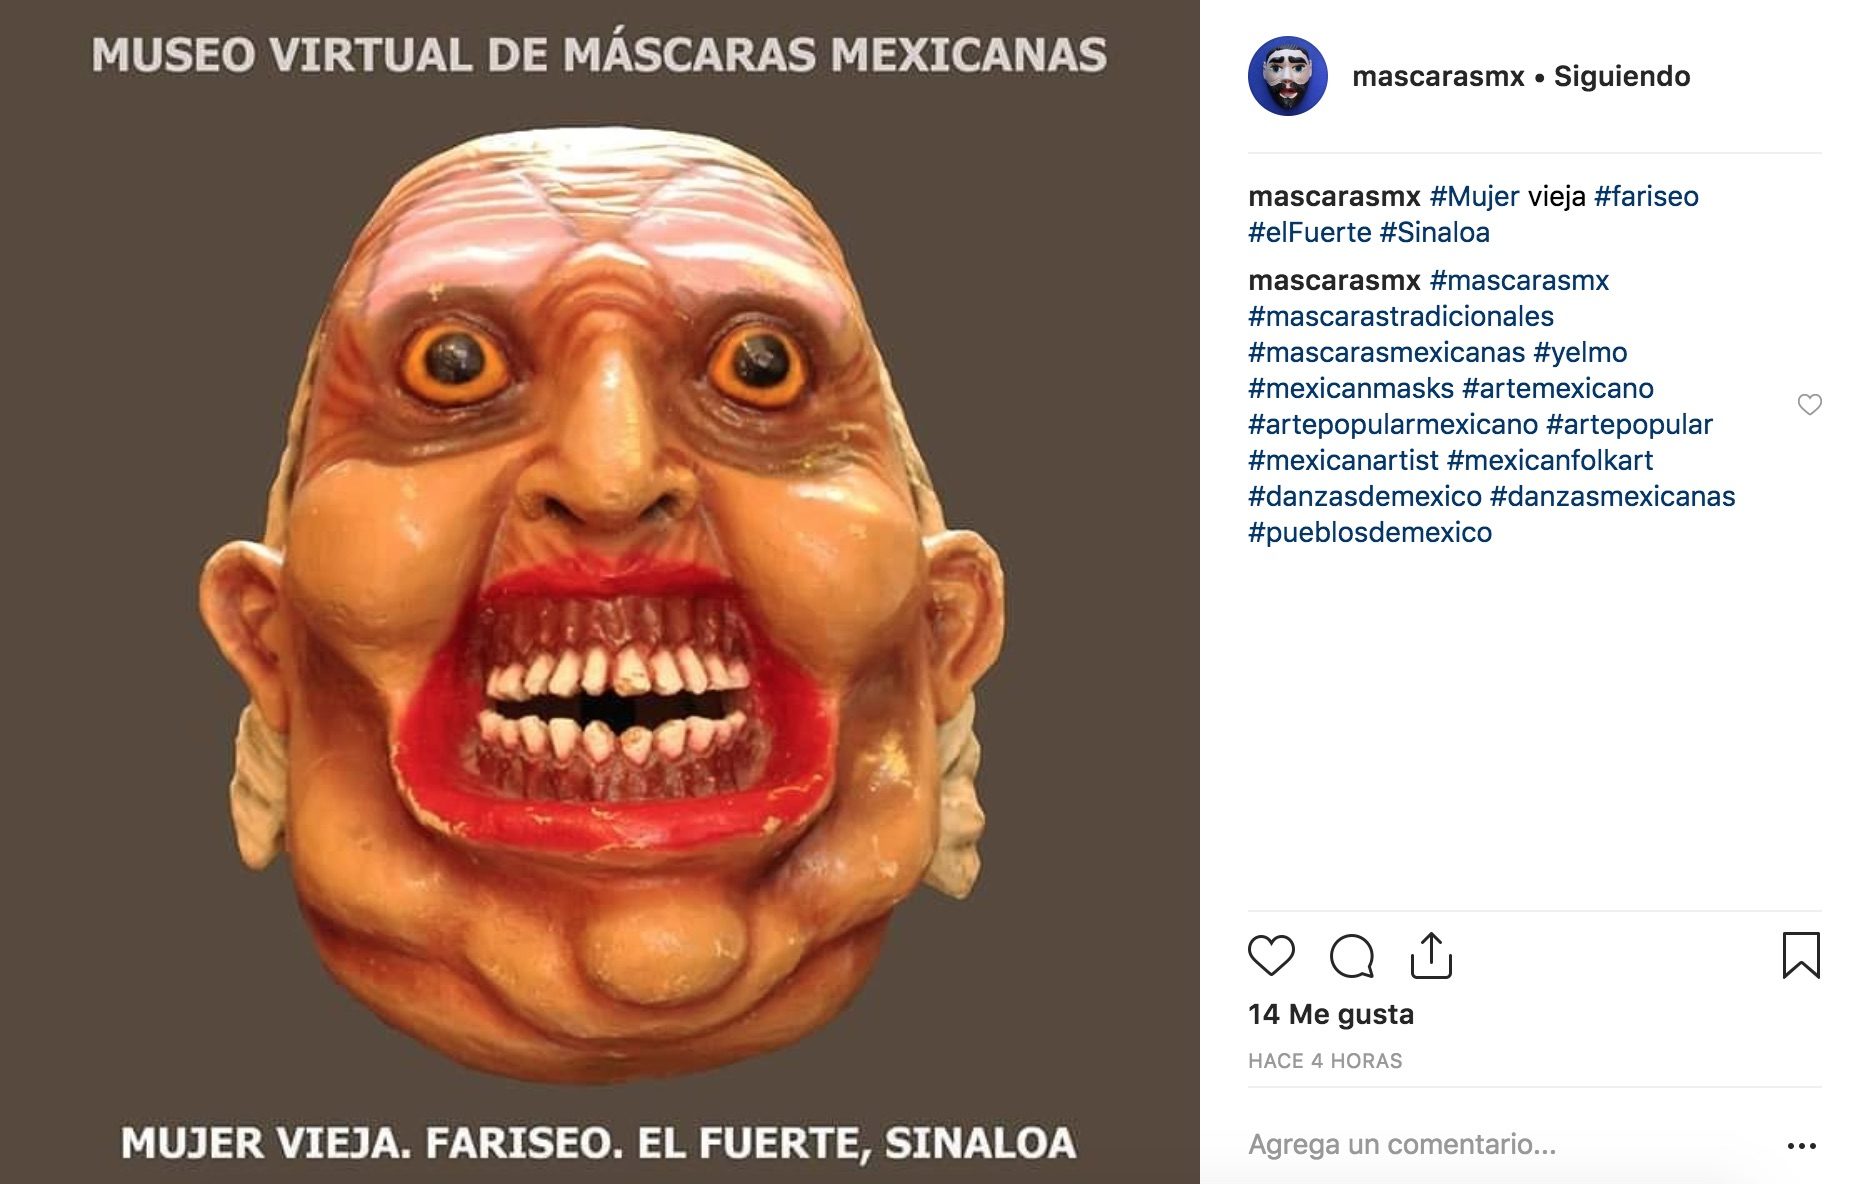 Las máscaras tradicionales mexicanas son un recurso innovador para disfrazarte este día de muertos con el que serás el más original.